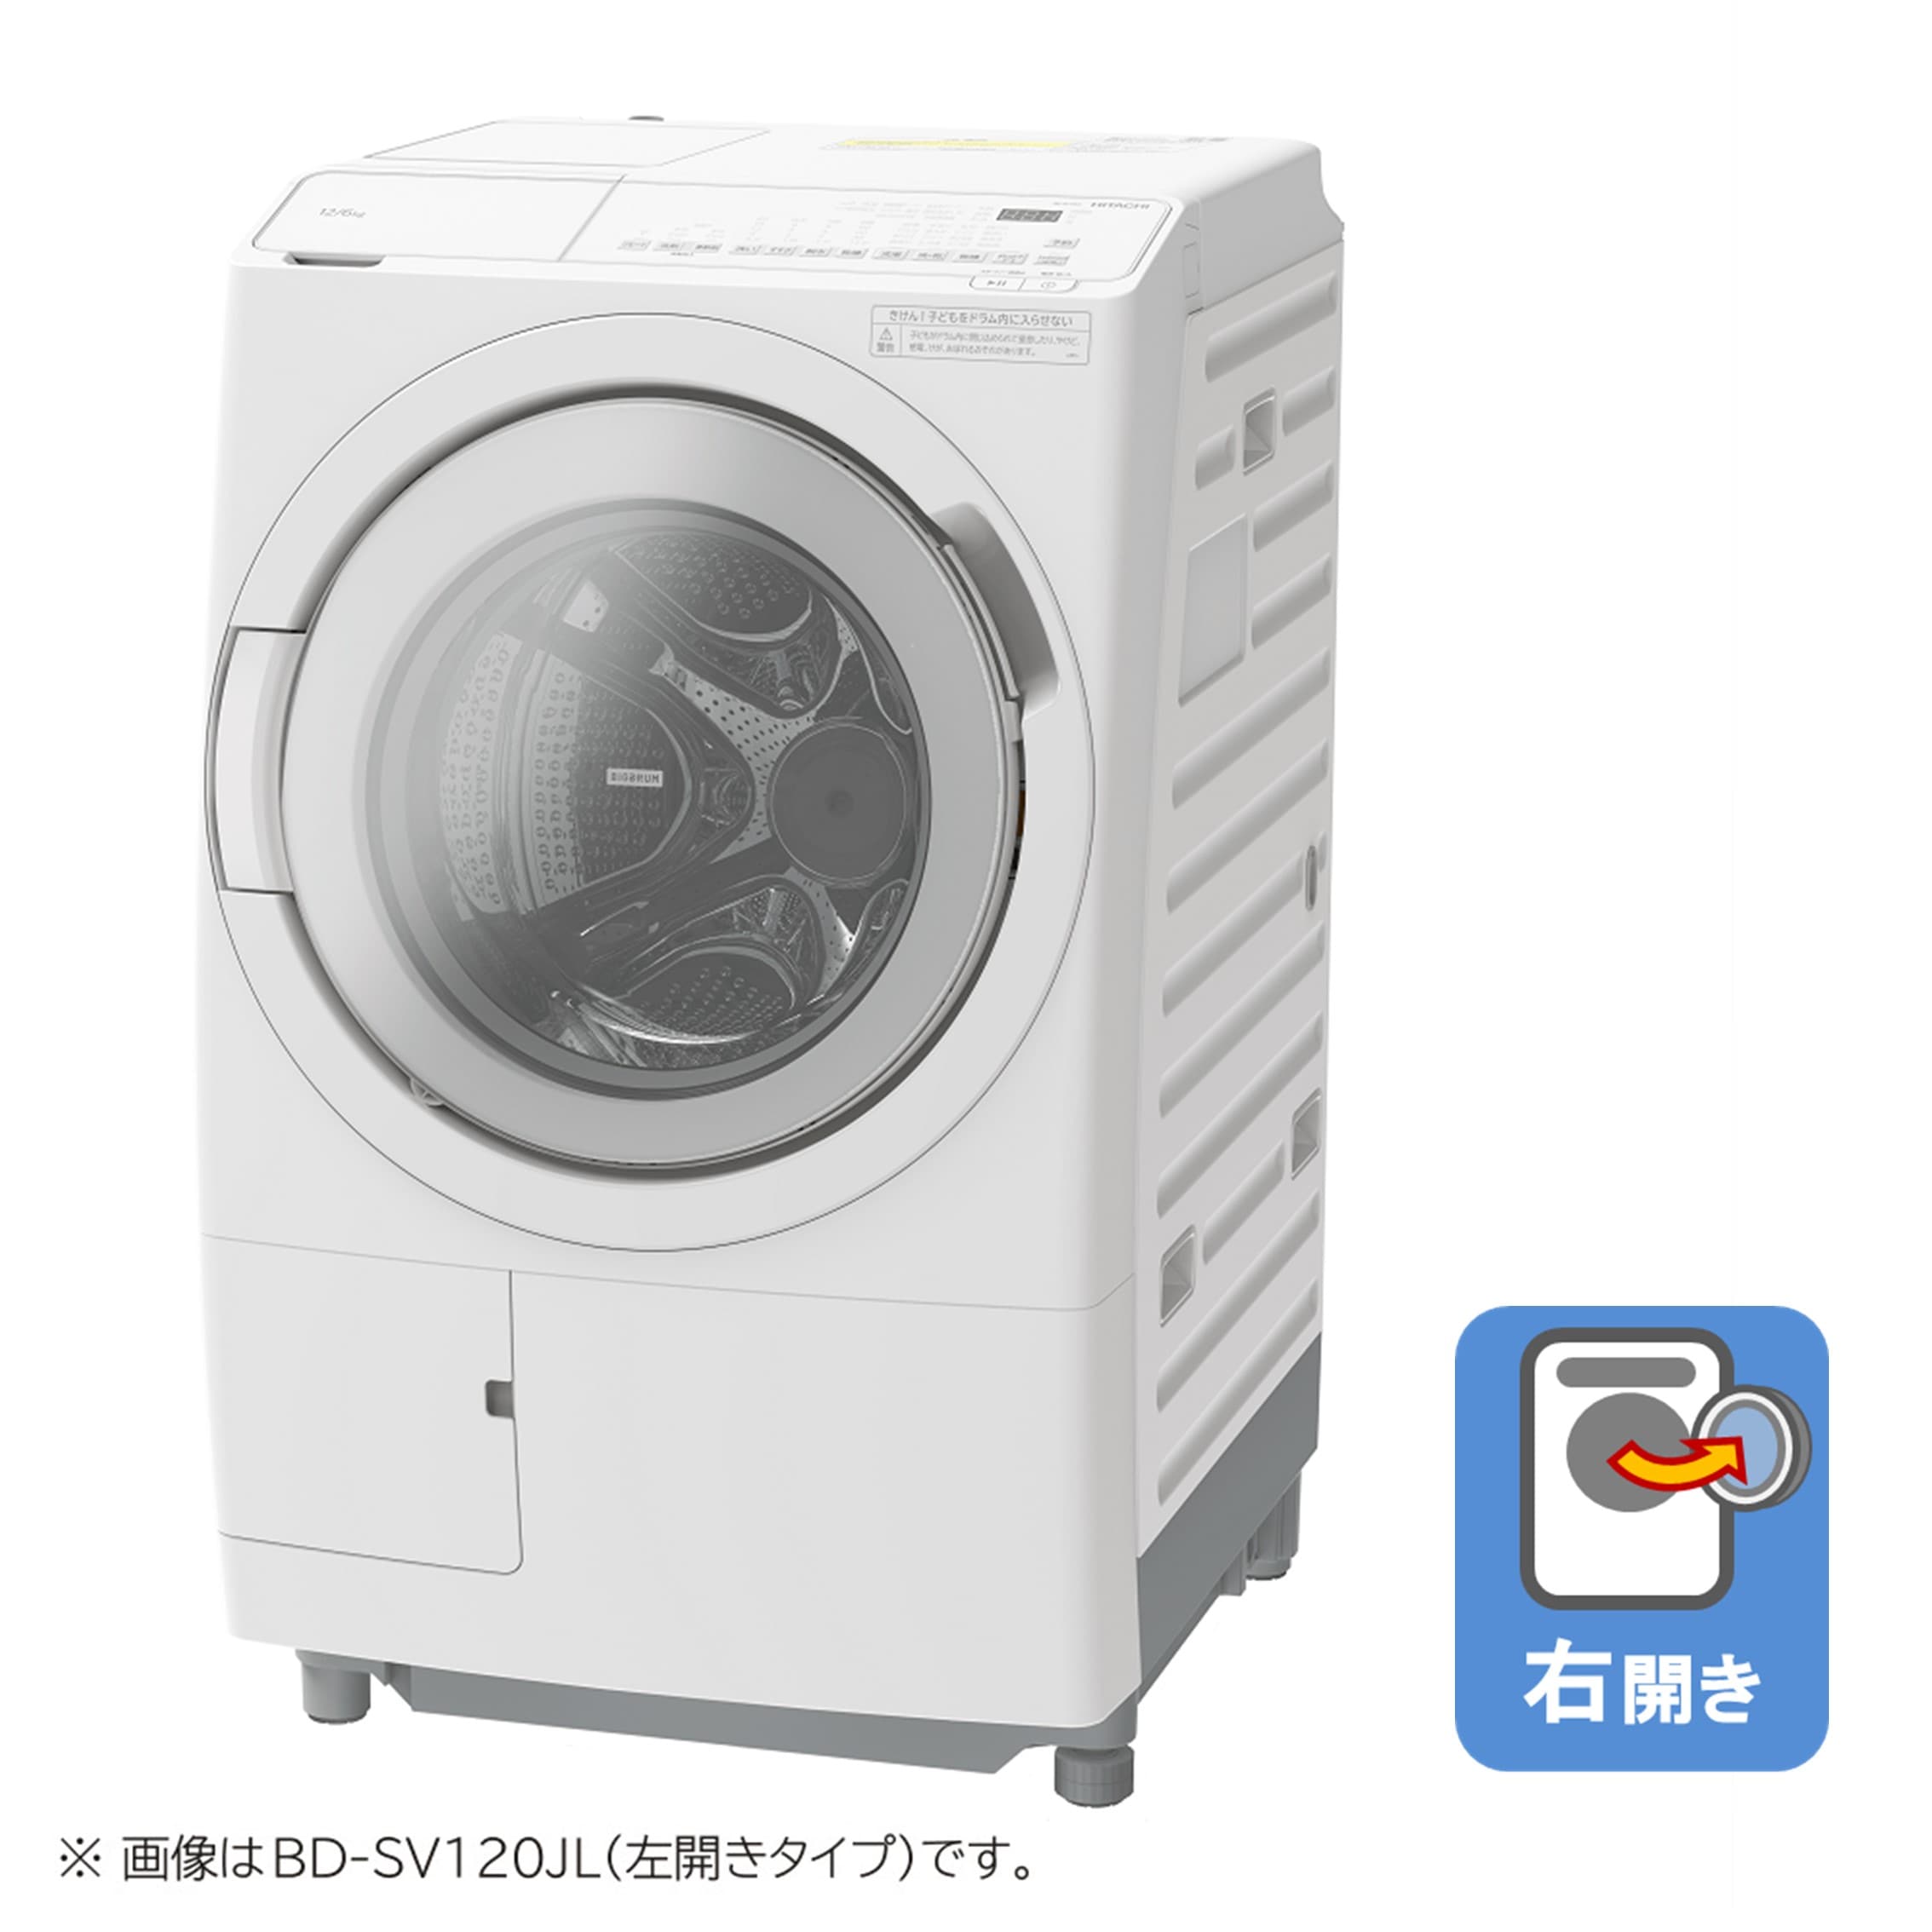 日立 ビッグドラム 据付付属品 【初回限定】 - 洗濯機